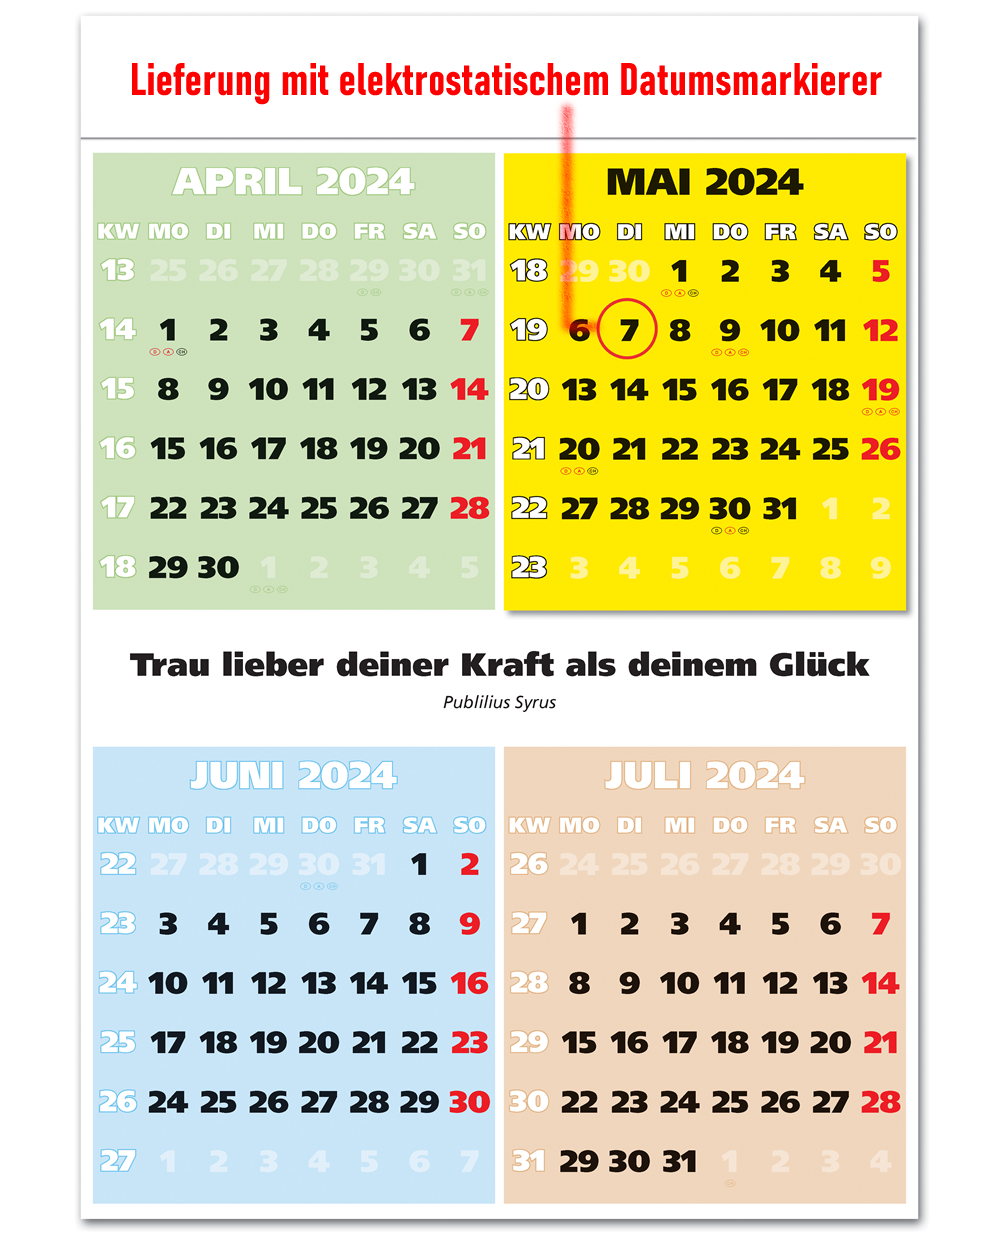 IMPULS-4-Monatsspruch Kalender 2025*